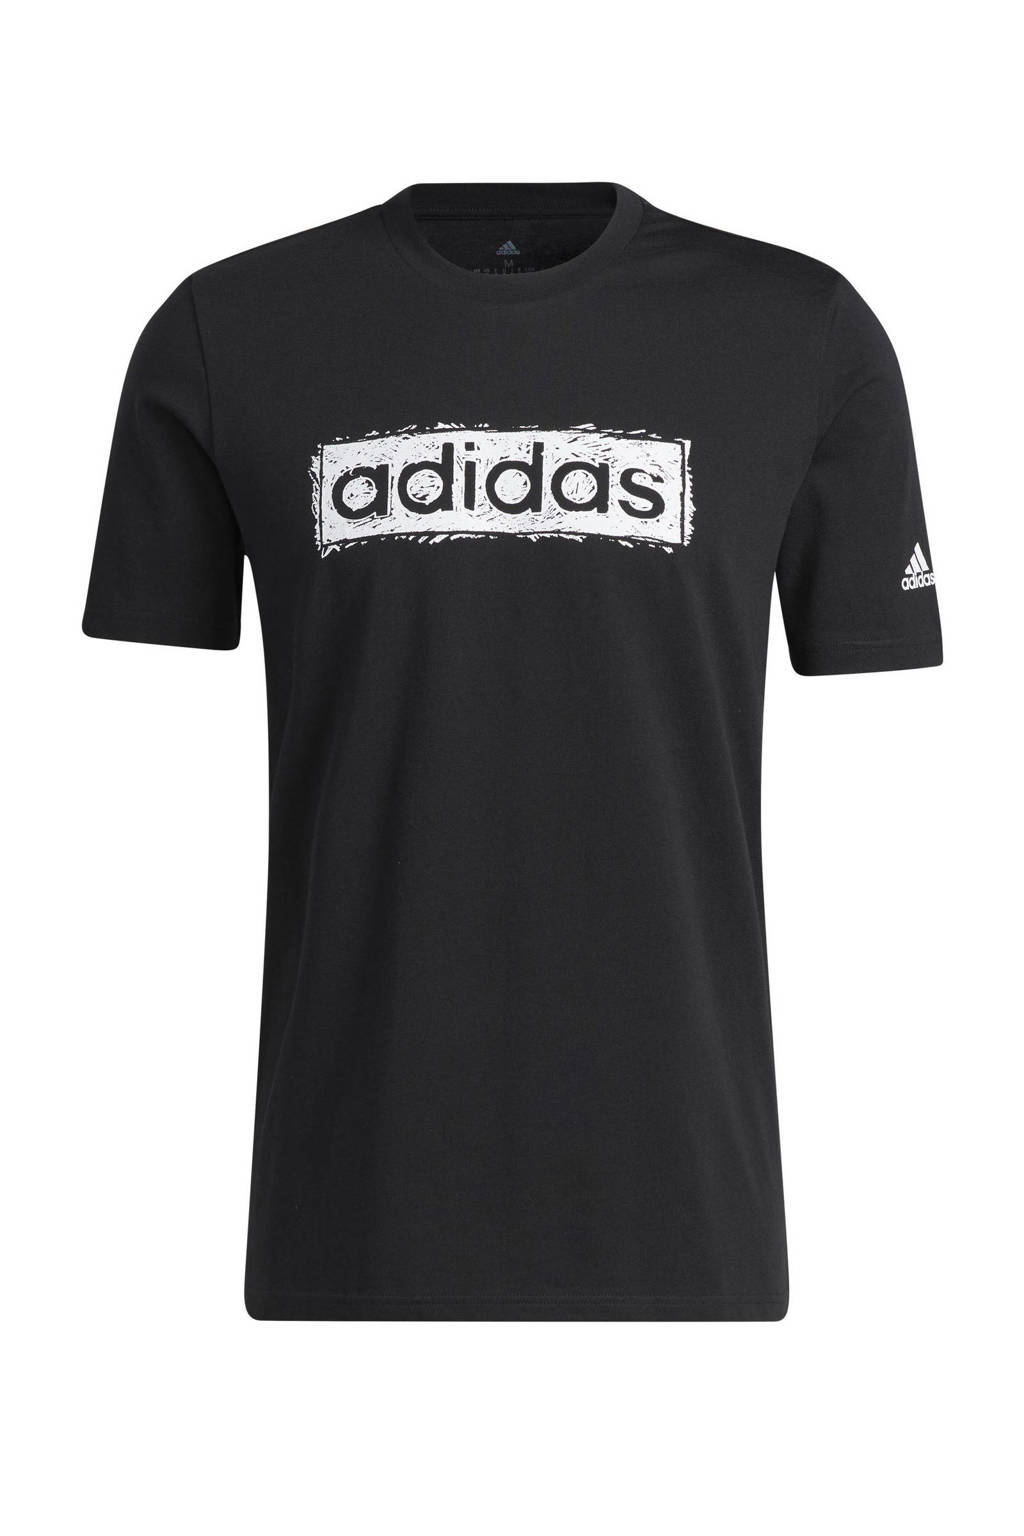 adidas Performance   sport T-shirt zwart